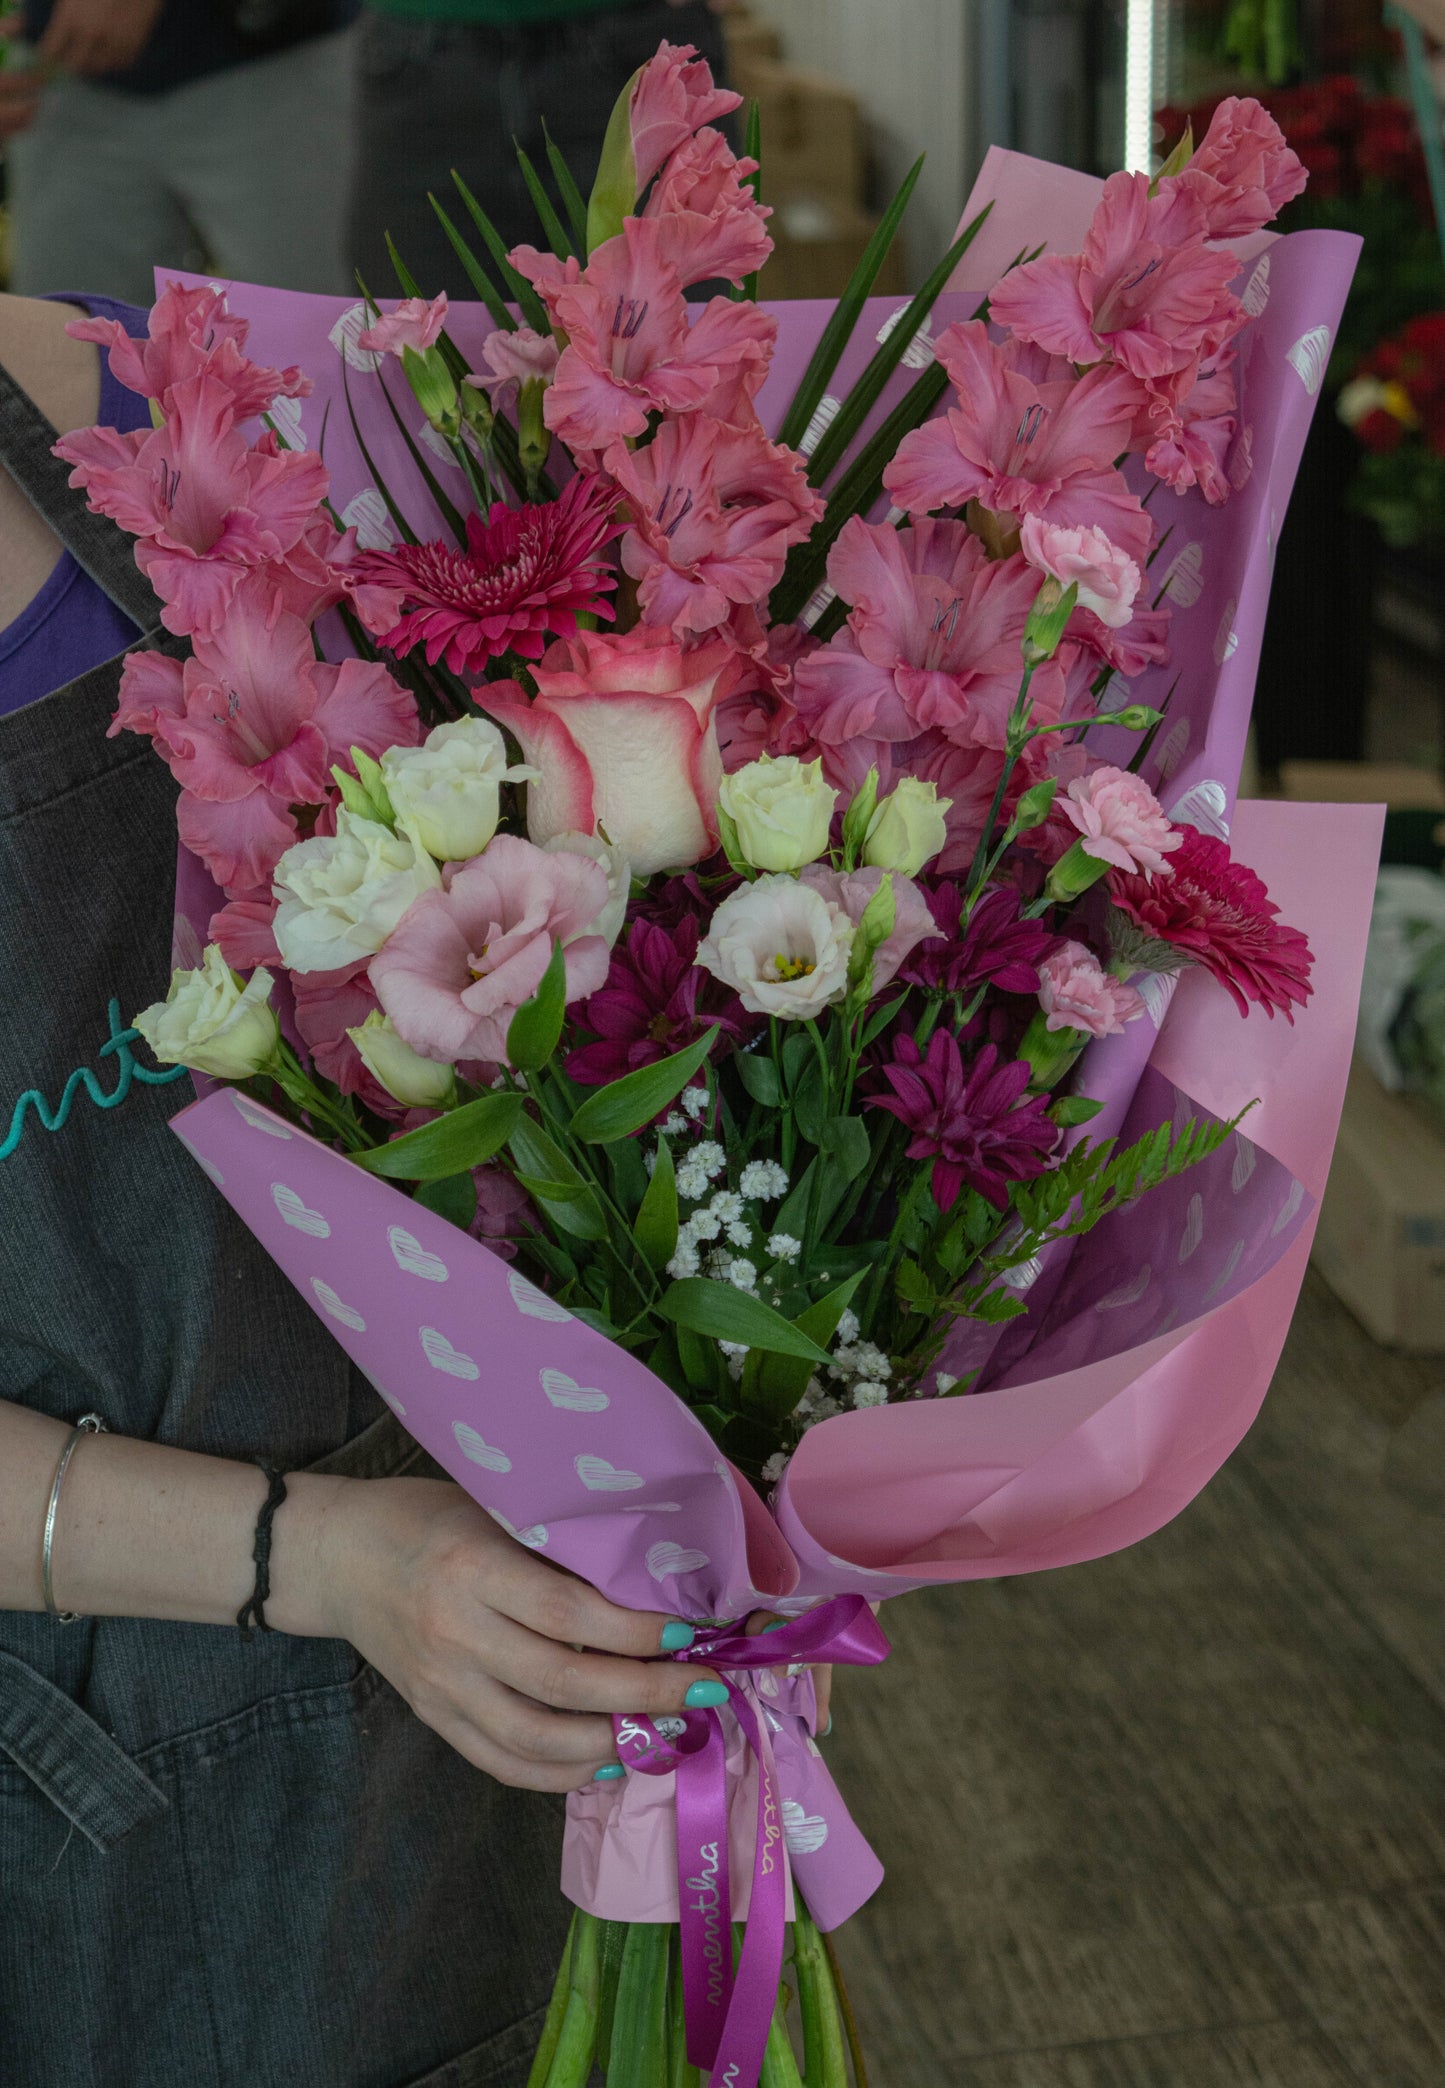 Aranjament floral cu gladiole roz - buchet elegant - livrare flori în Reșița